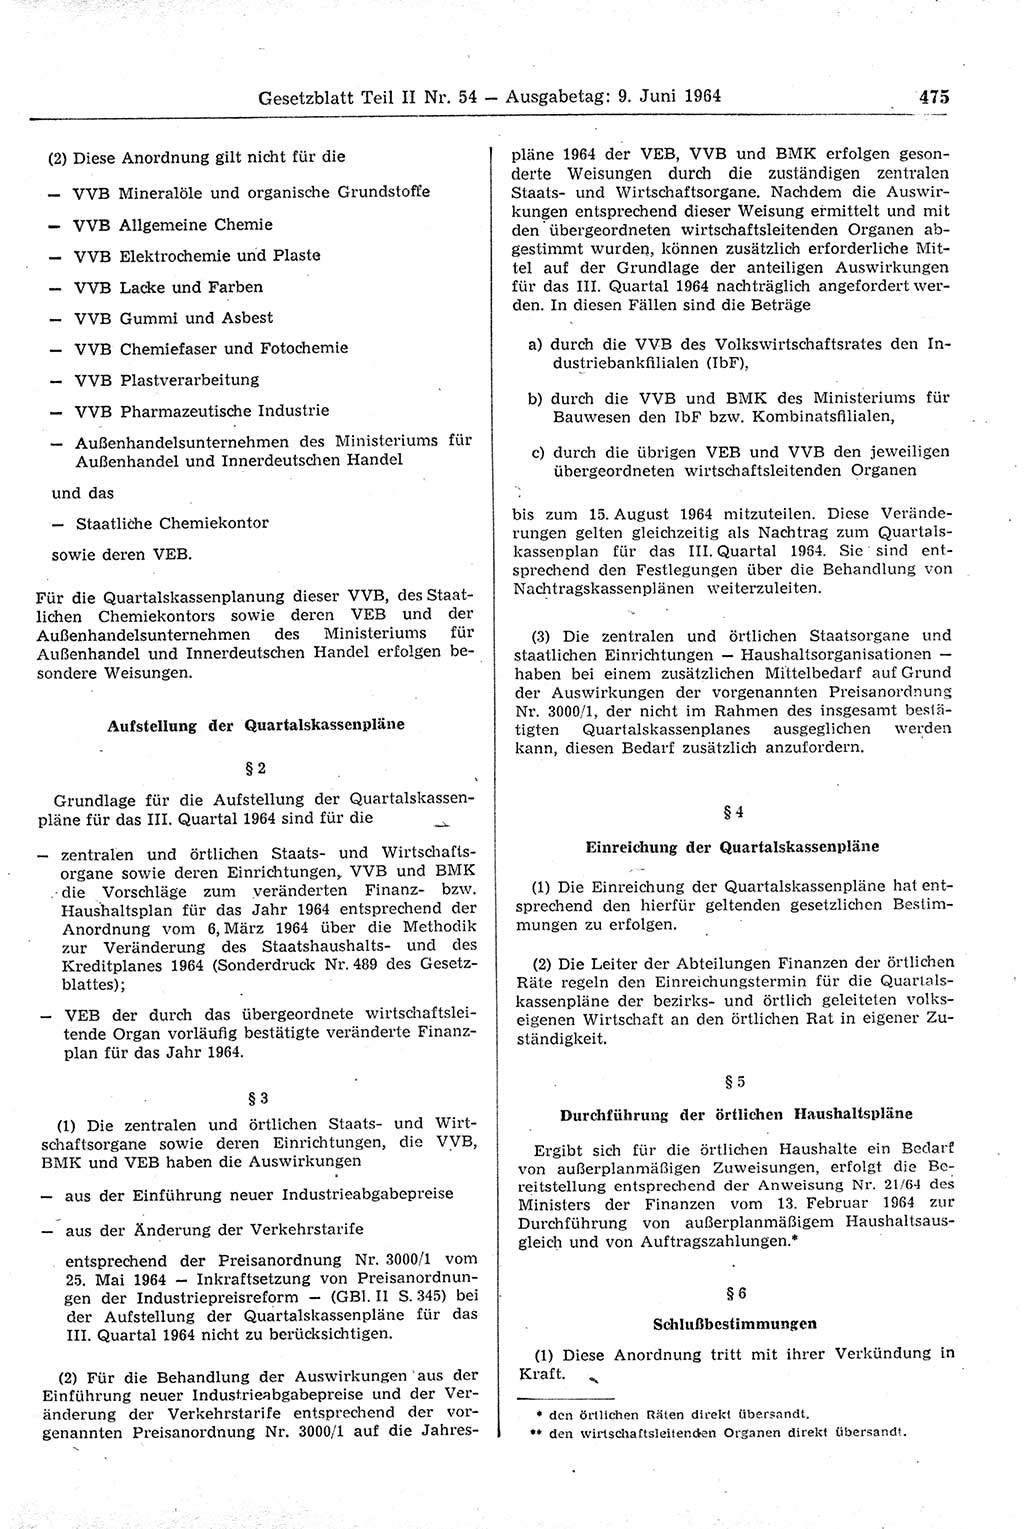 Gesetzblatt (GBl.) der Deutschen Demokratischen Republik (DDR) Teil ⅠⅠ 1964, Seite 475 (GBl. DDR ⅠⅠ 1964, S. 475)